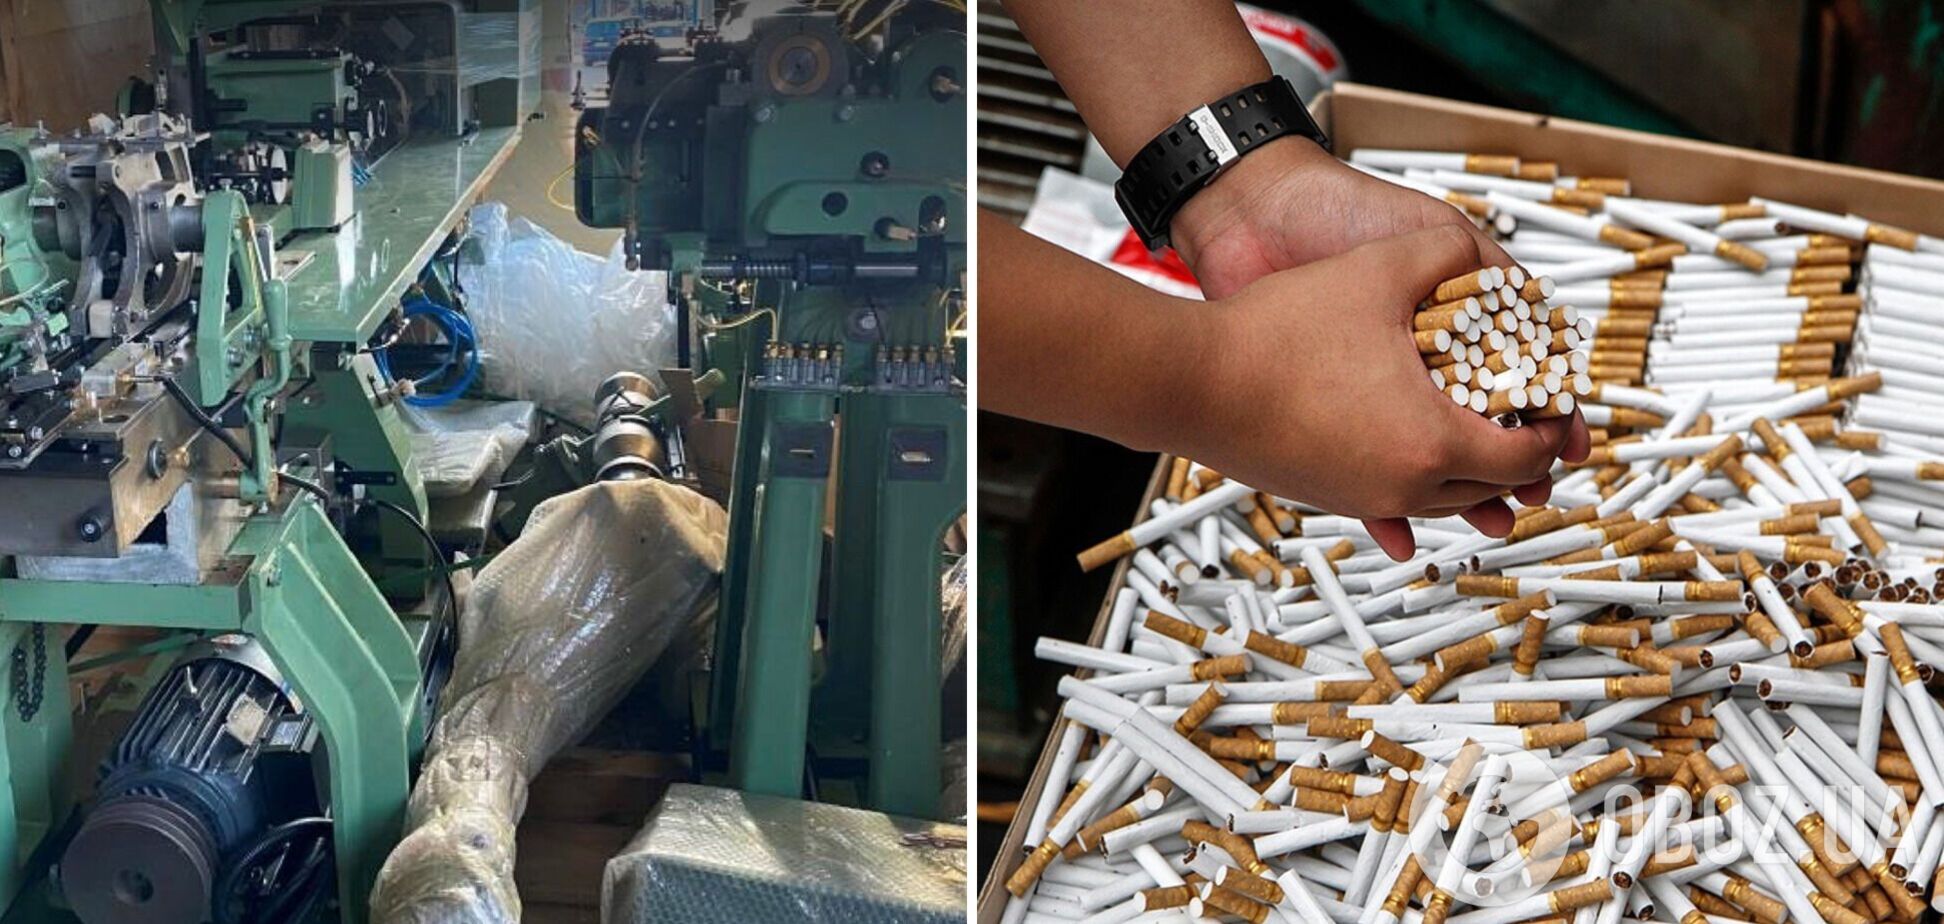 Вартість обладнання для виробництва цигарок оцінили у 10 млн грн